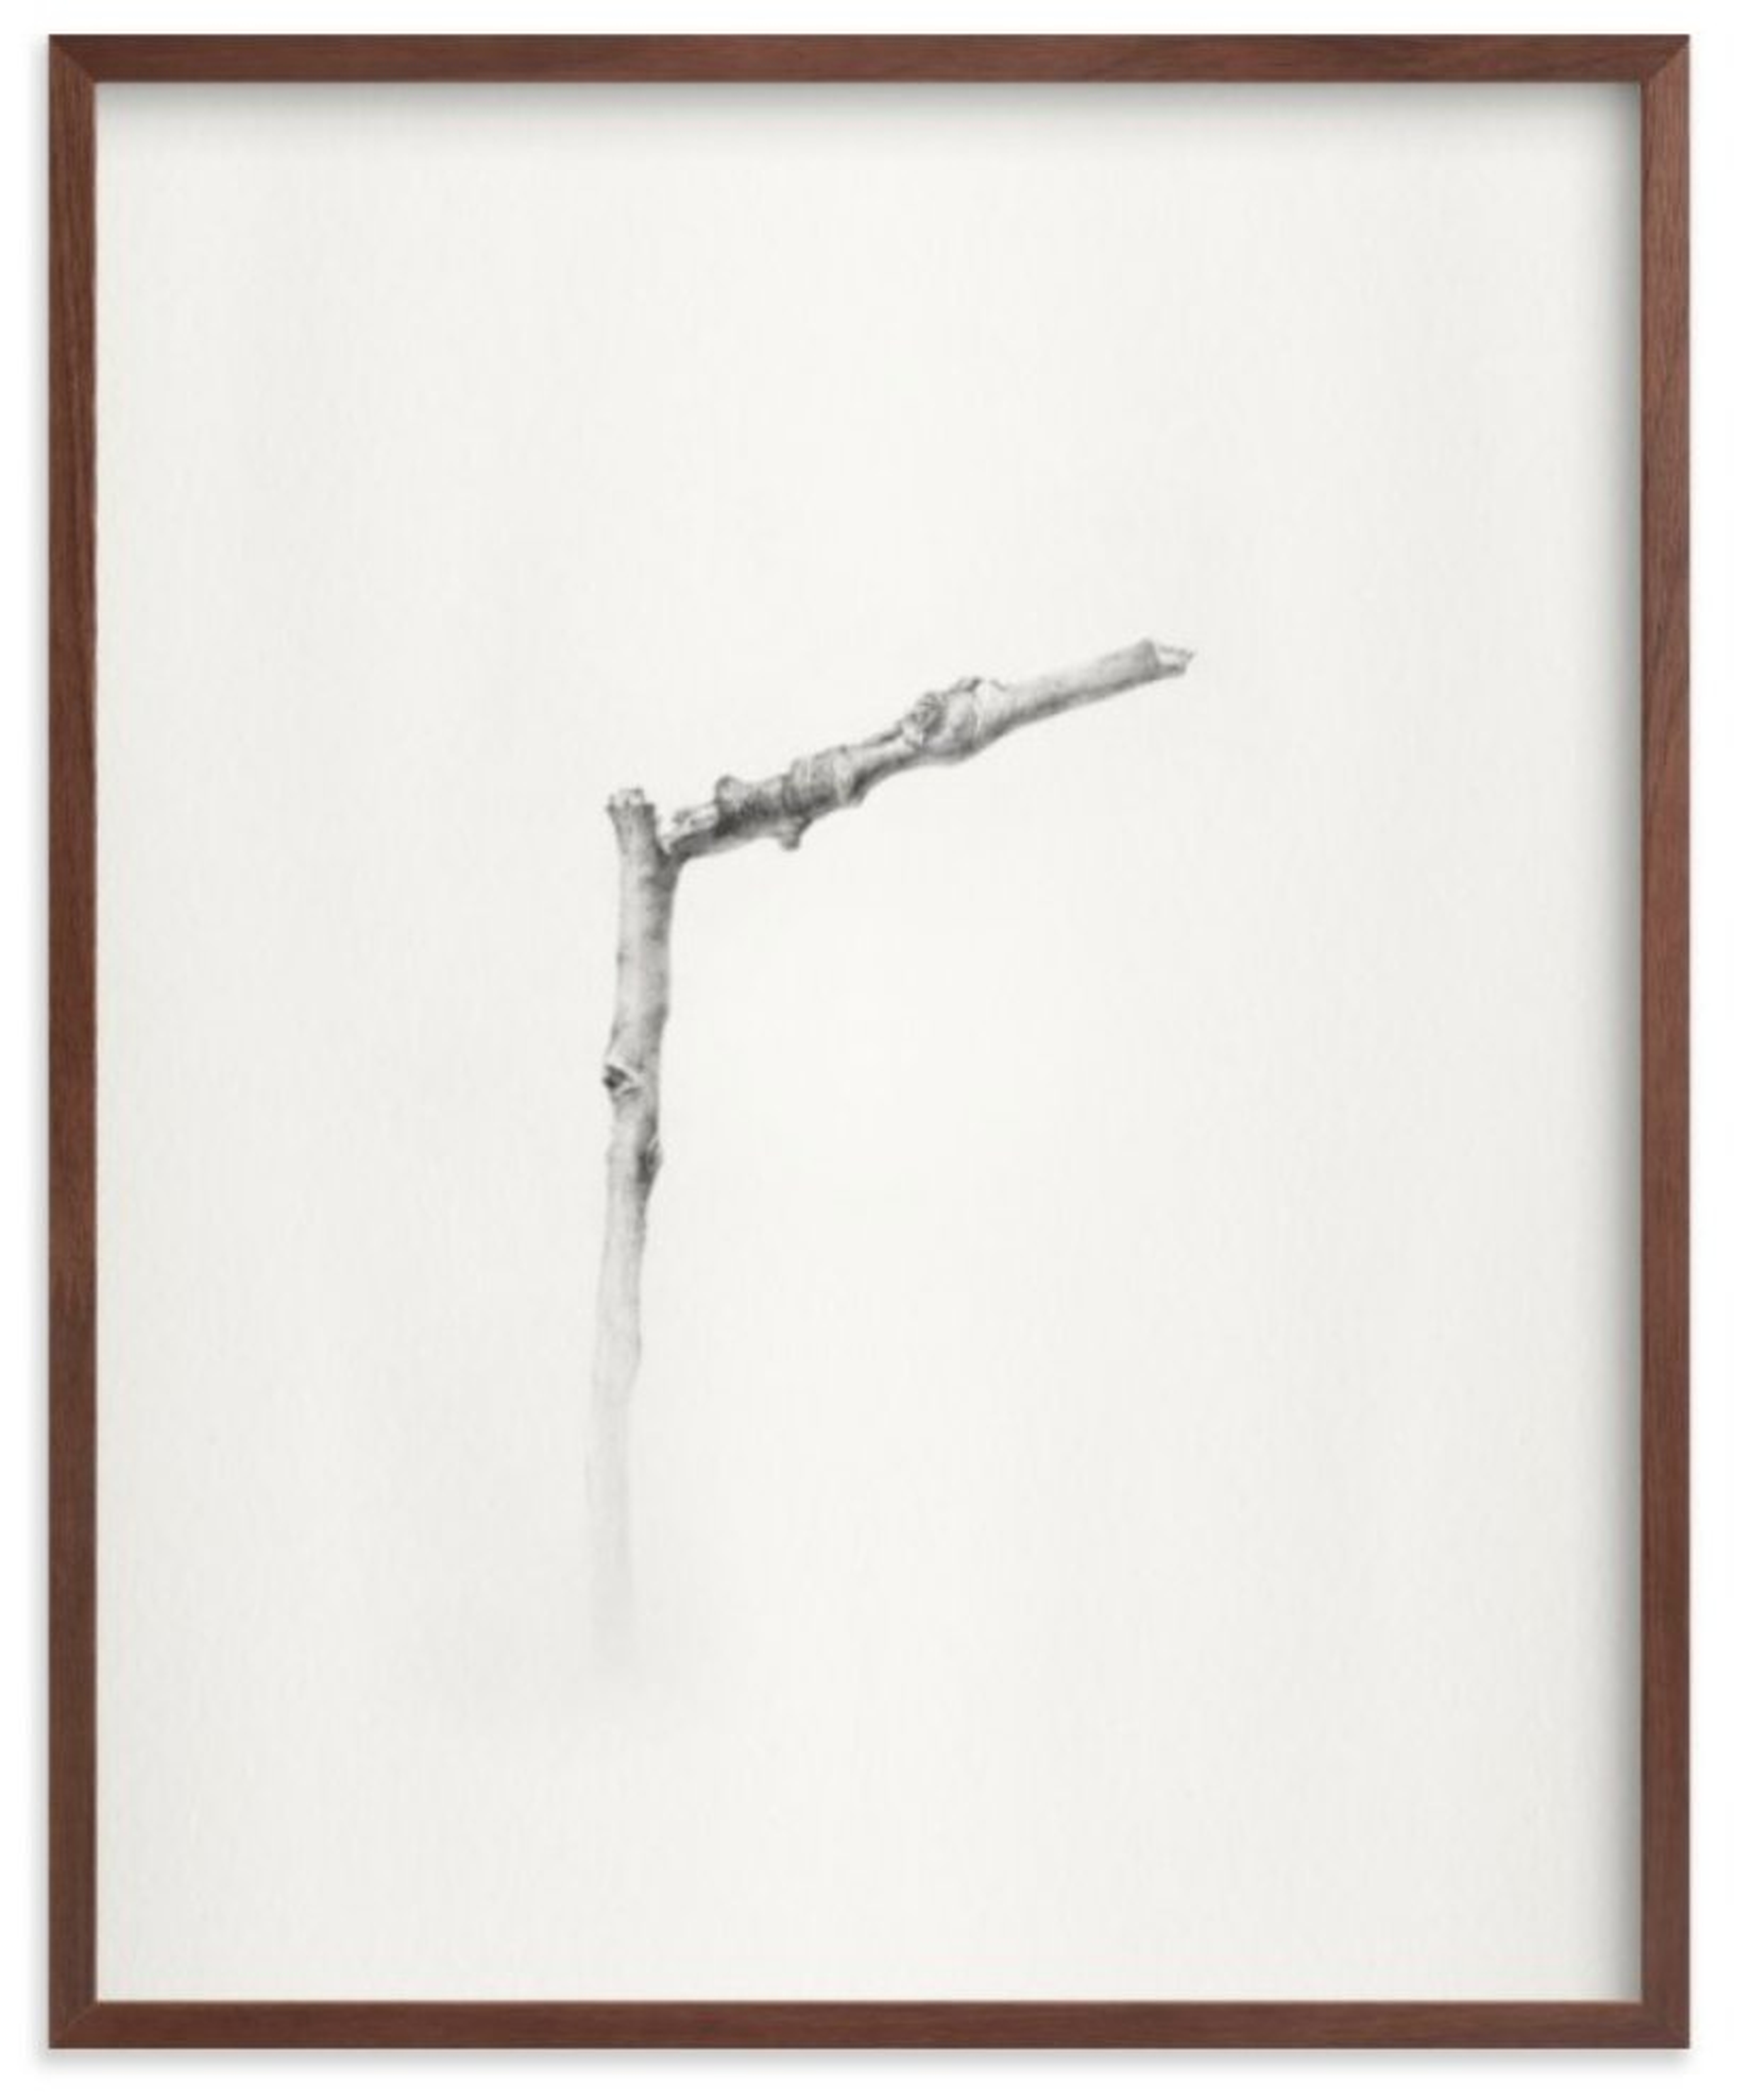 Twig- Solitude 01, 16" x 20", walnut frame - Minted